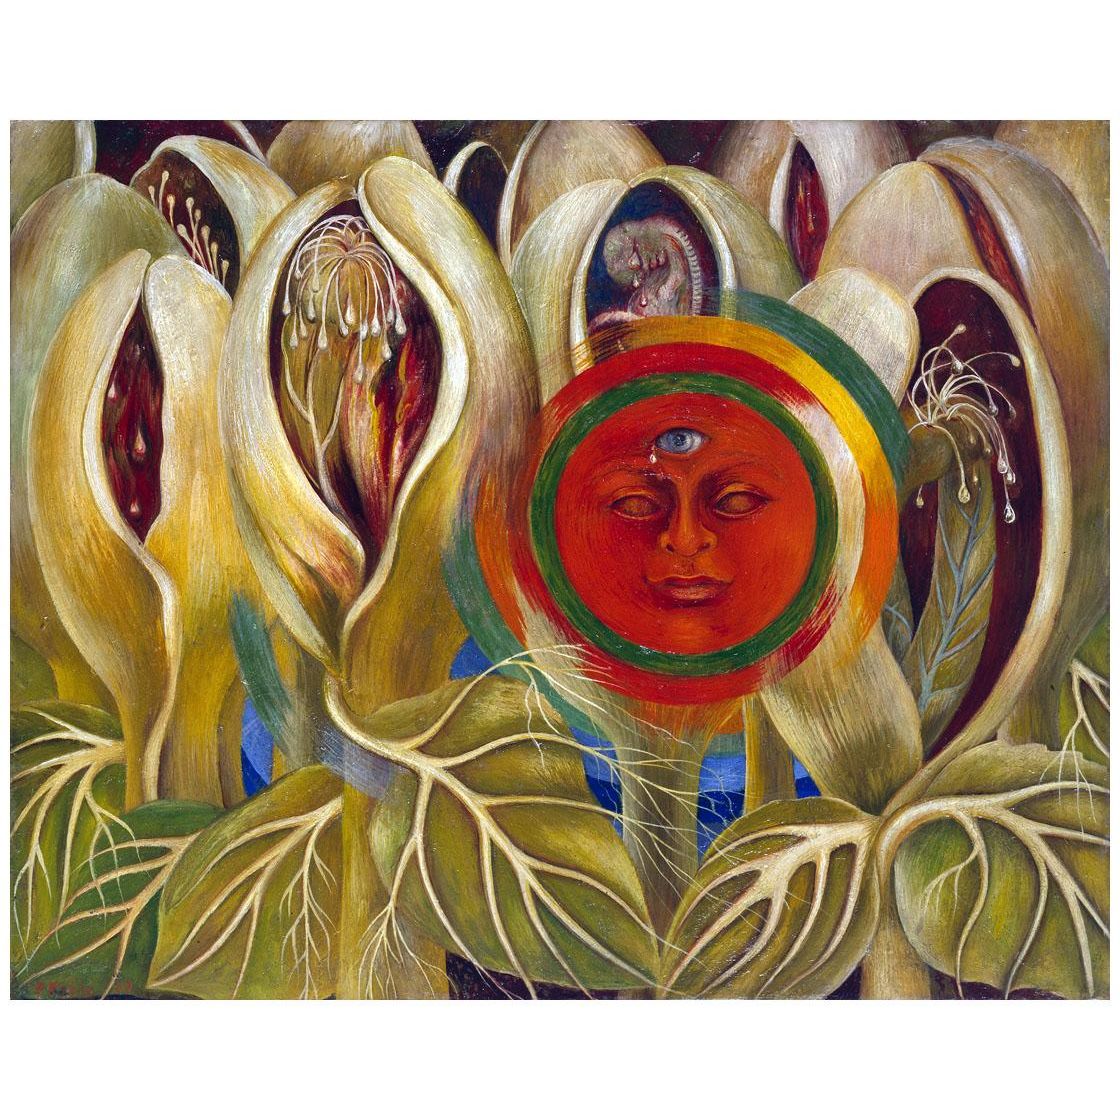 Frida Kahlo. Sol y vida. 1947. Galeria Arail Mexico